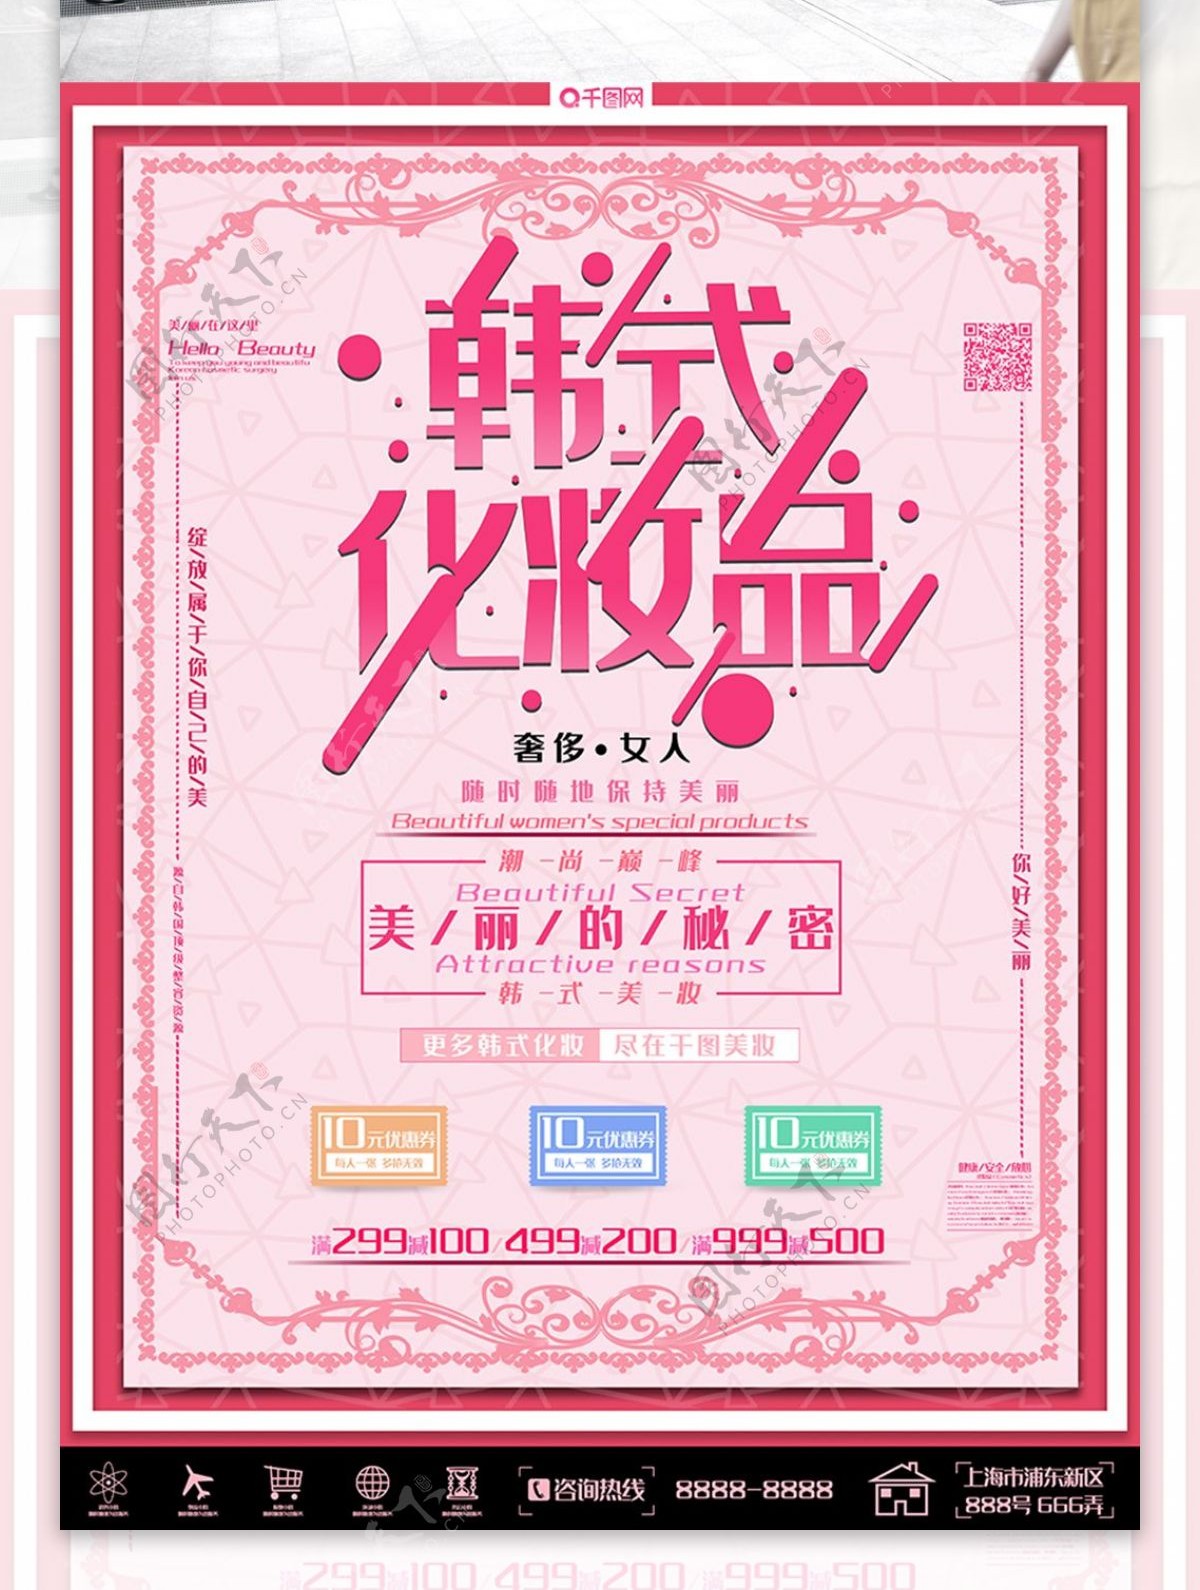 粉色小清新韩式化妆品促销海报